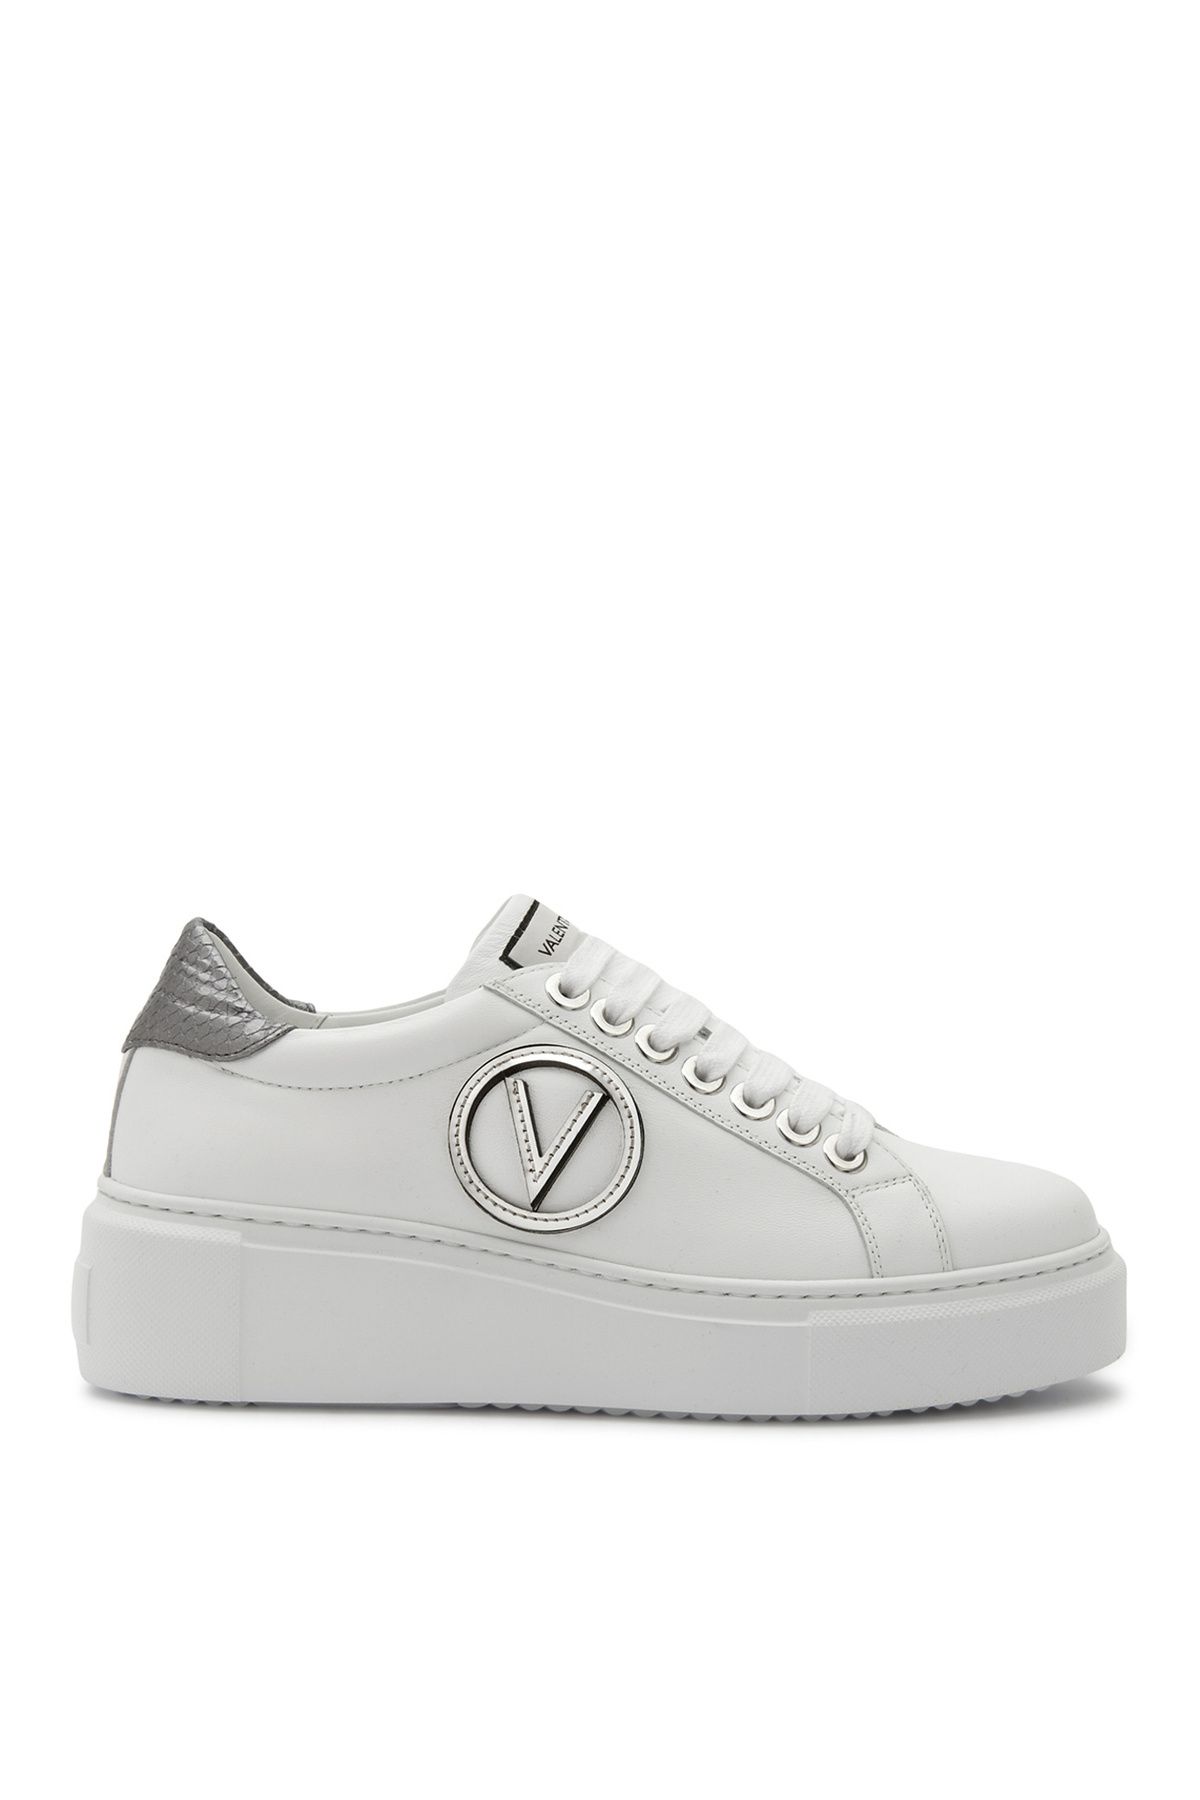 Valentino Beyaz Kadın Deri Sneaker 91B2203VIT790